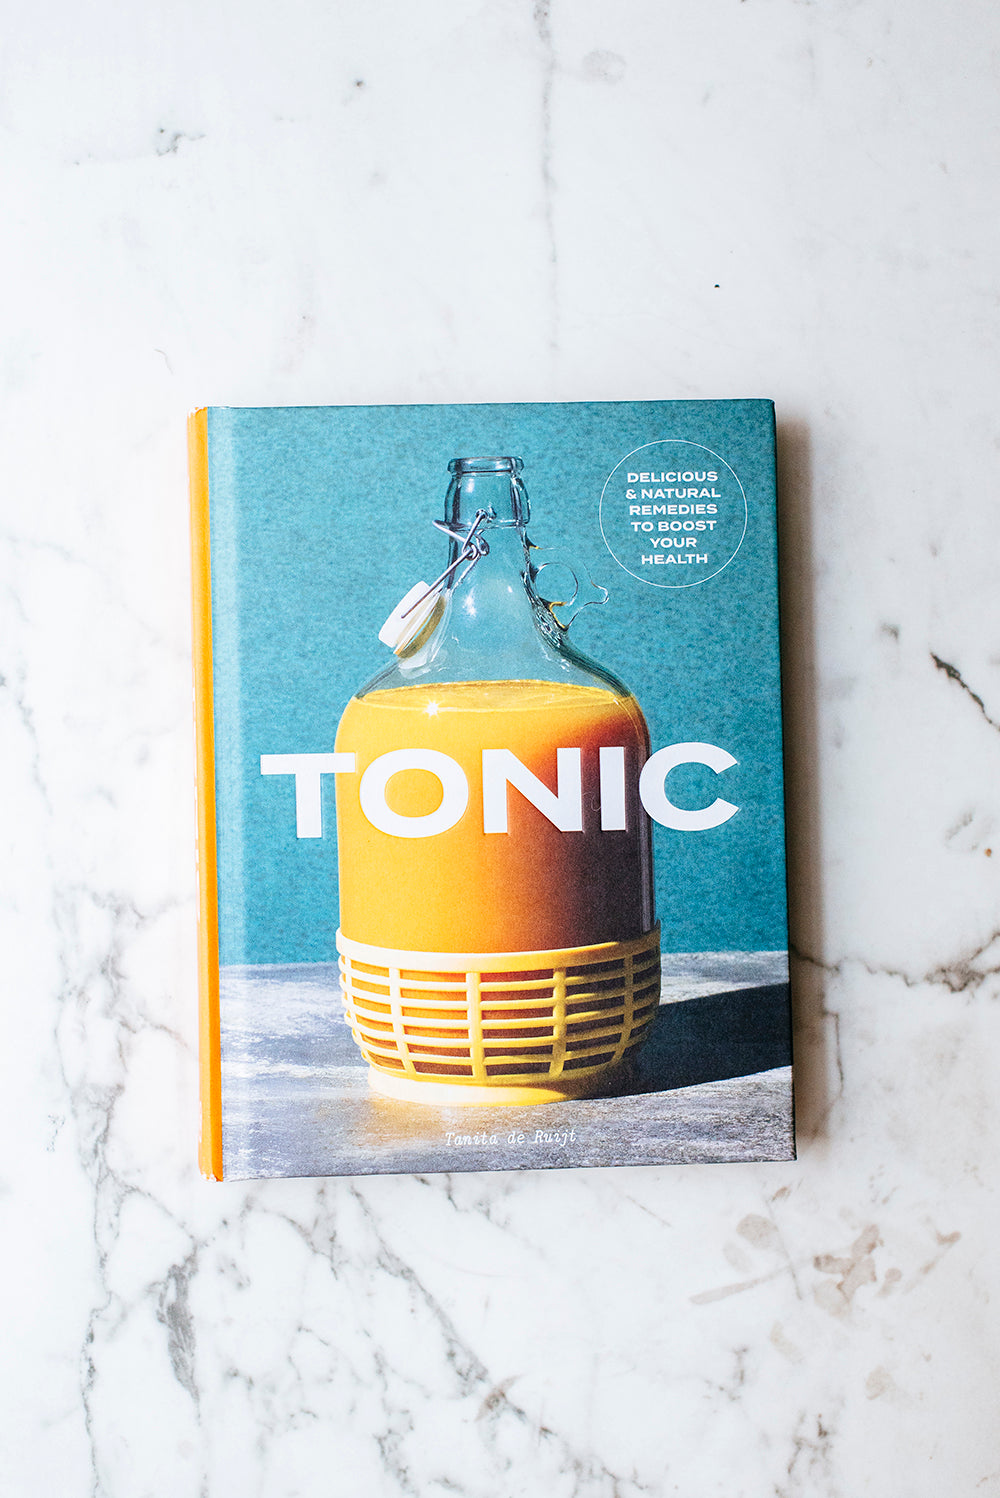 Herbal Chai Tonic & Review of Tonic by Tanita de Ruijt